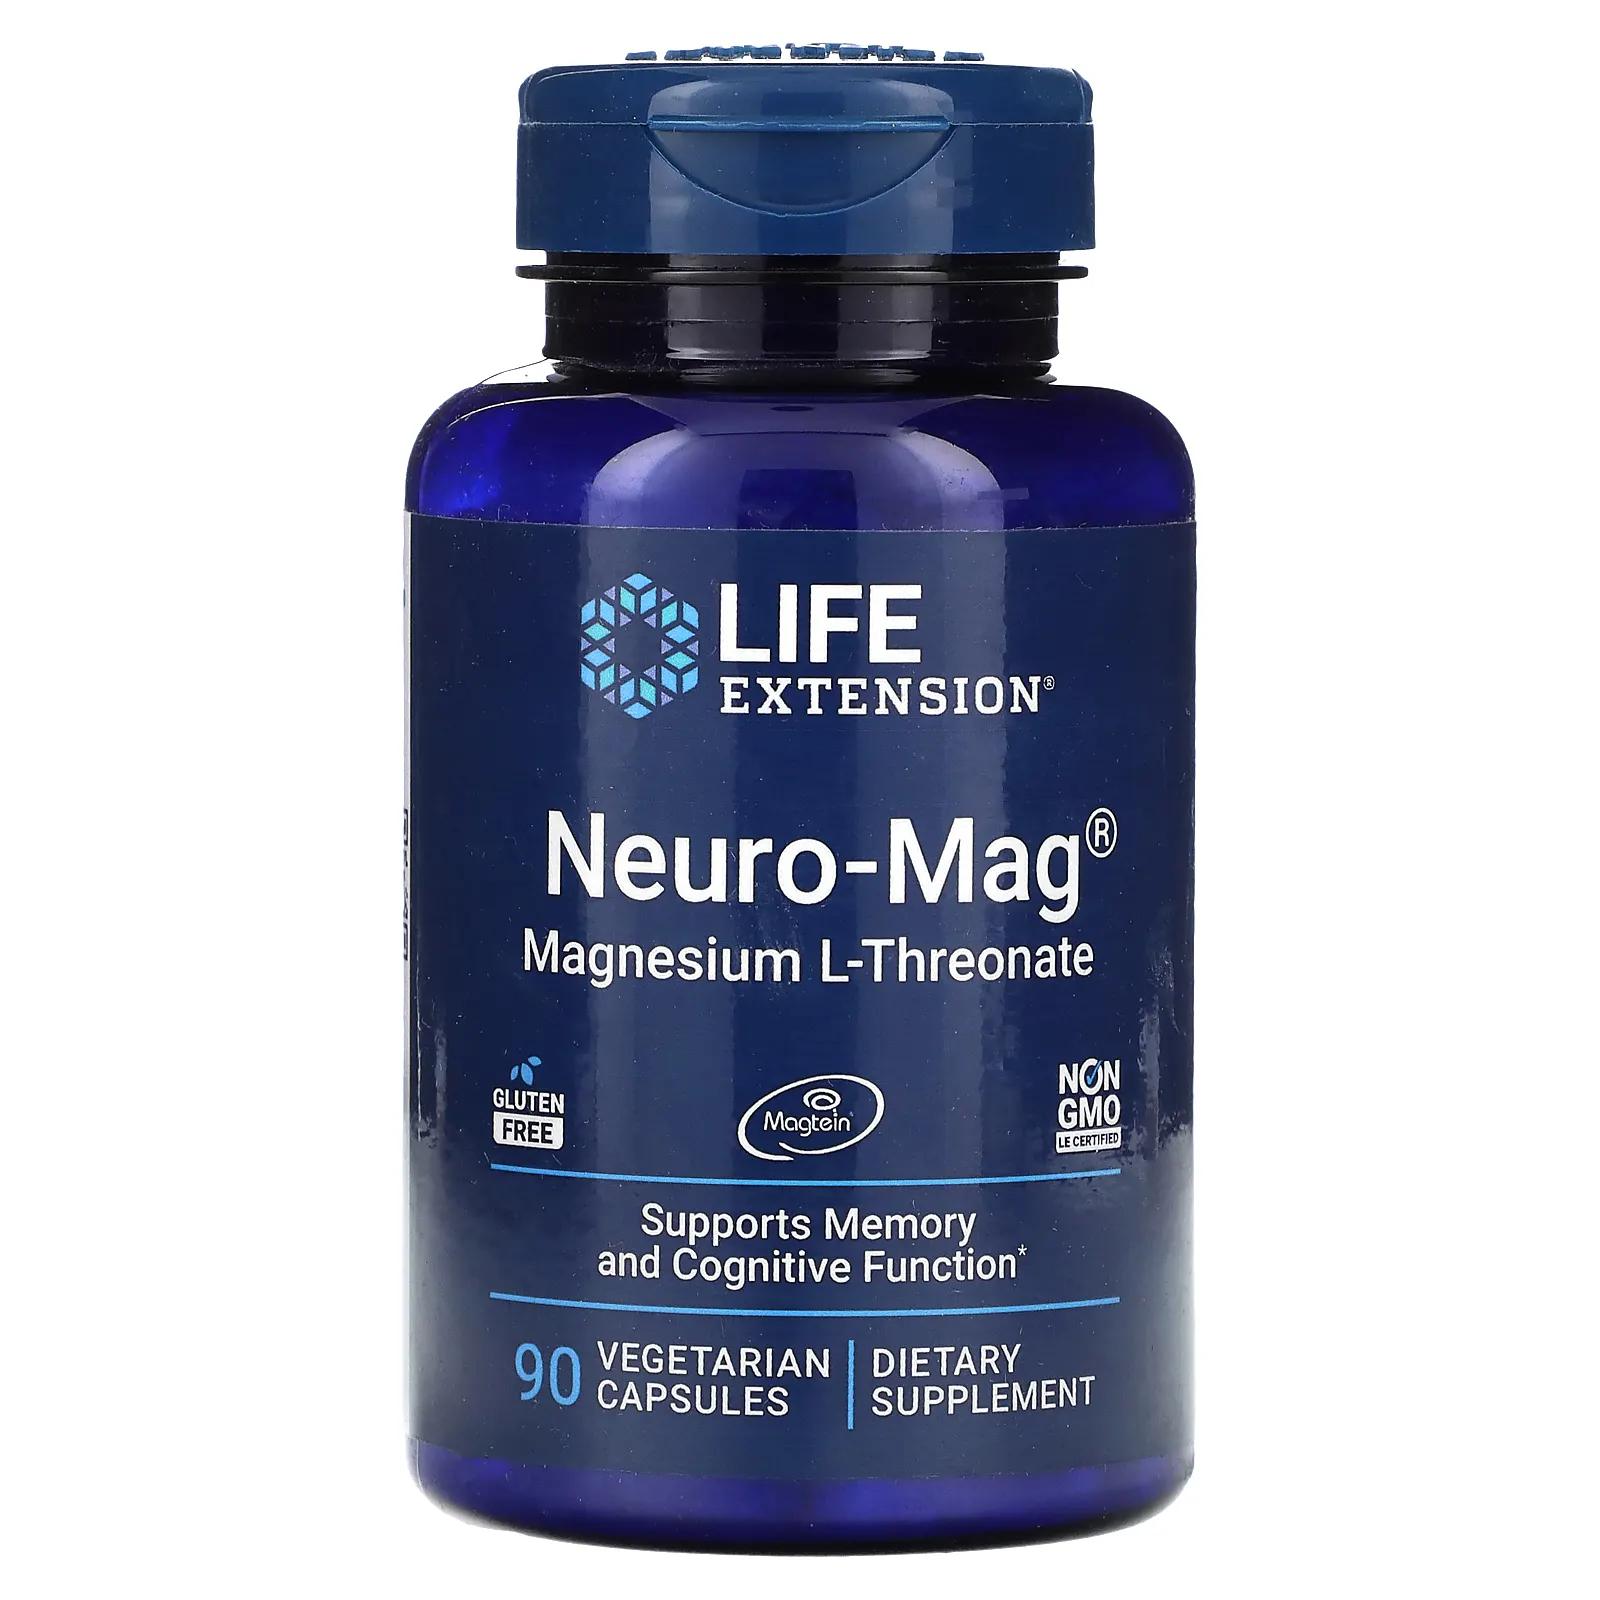 Life Extension Neuro-Mag магний L-треонат 90 капсул в растительной оболочке